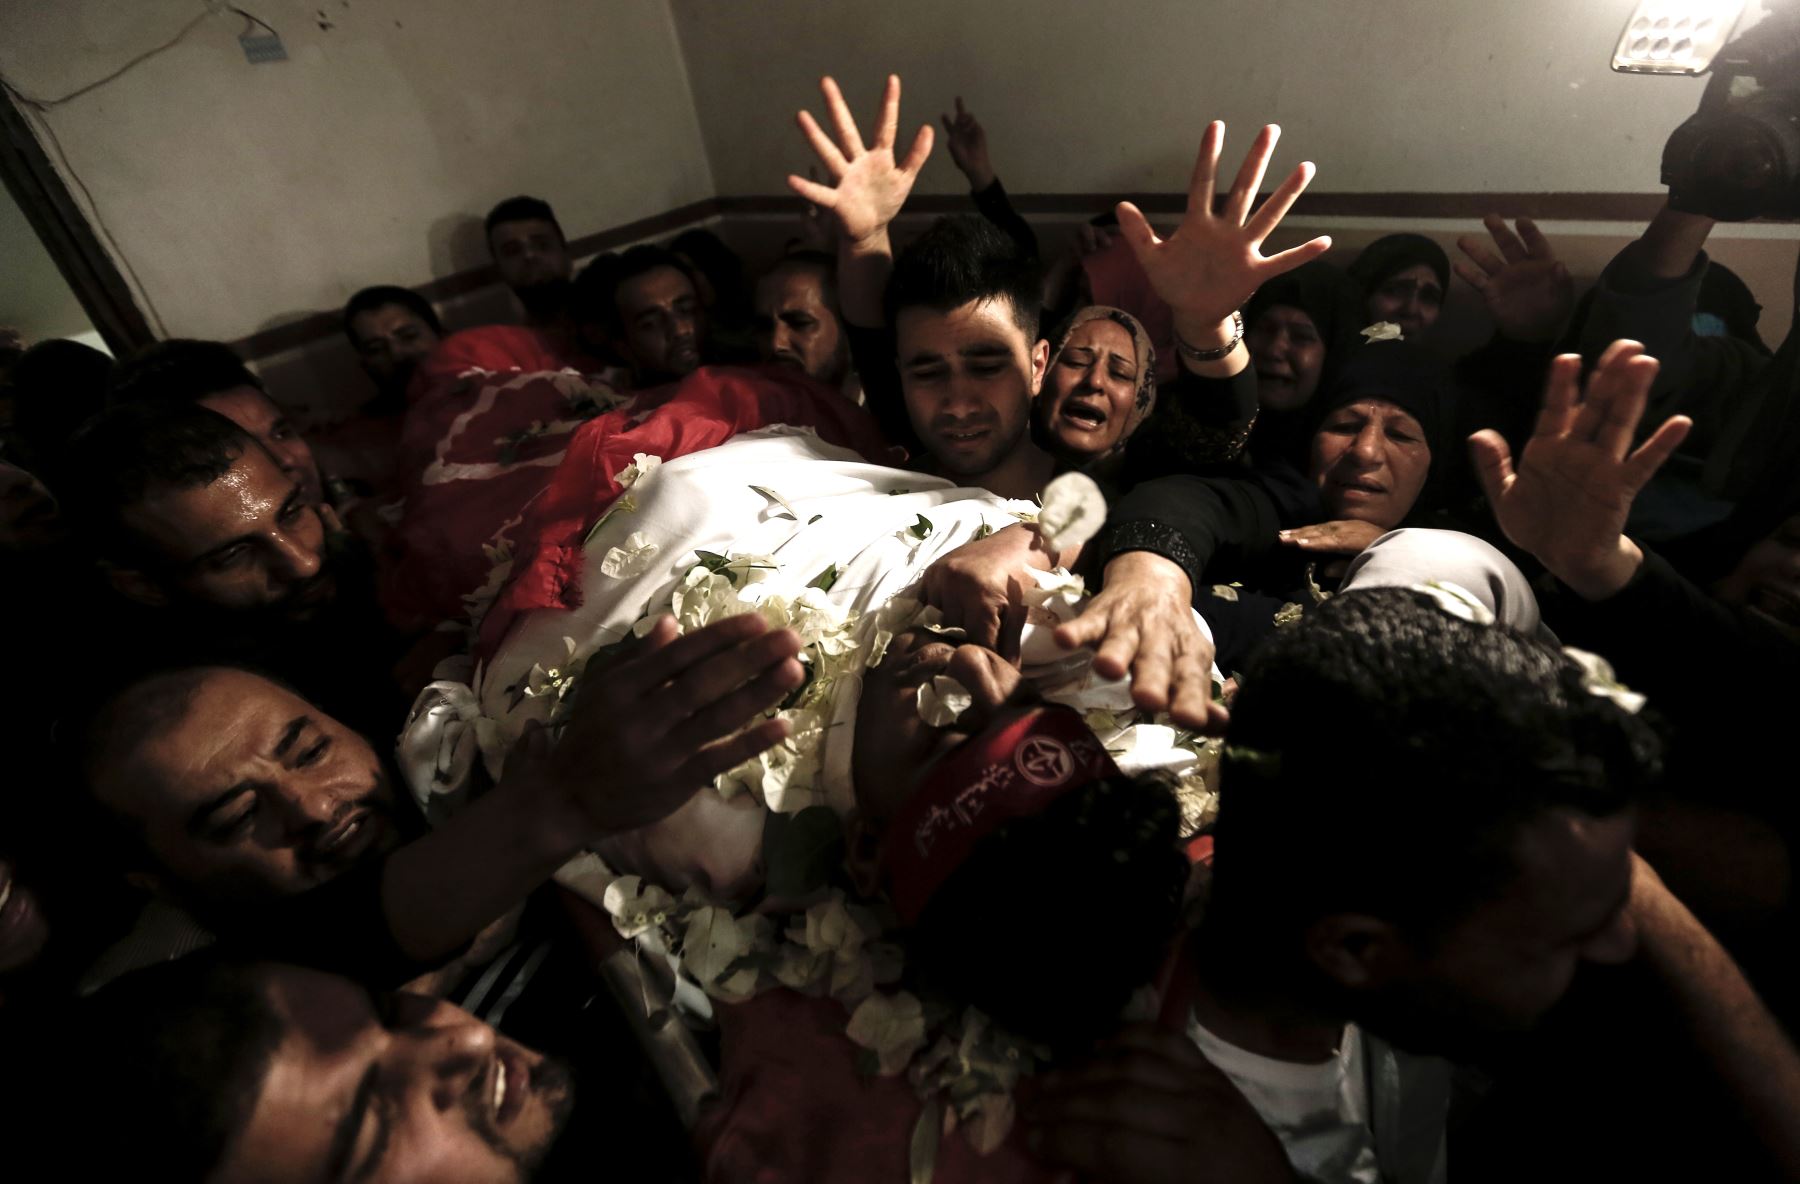 Los familiares de Mohammed Ouda, muertos en un ataque aéreo israelí el día anterior, arrojaron flores sobre su cuerpo durante su funeral en Beit Lahia, en el norte de la Franja de Gaza, el 13 de noviembre de 2018. - Seis muertos de palestinos en Gaza en menos de 24 horas. Los ataques israelíes atacaron a los militantes y allanaron los edificios mientras enviaban bolas de fuego y columnas de humo al cielo en la peor escalada entre Israel y los militantes palestinos en Gaza desde la guerra de 2014. AFP